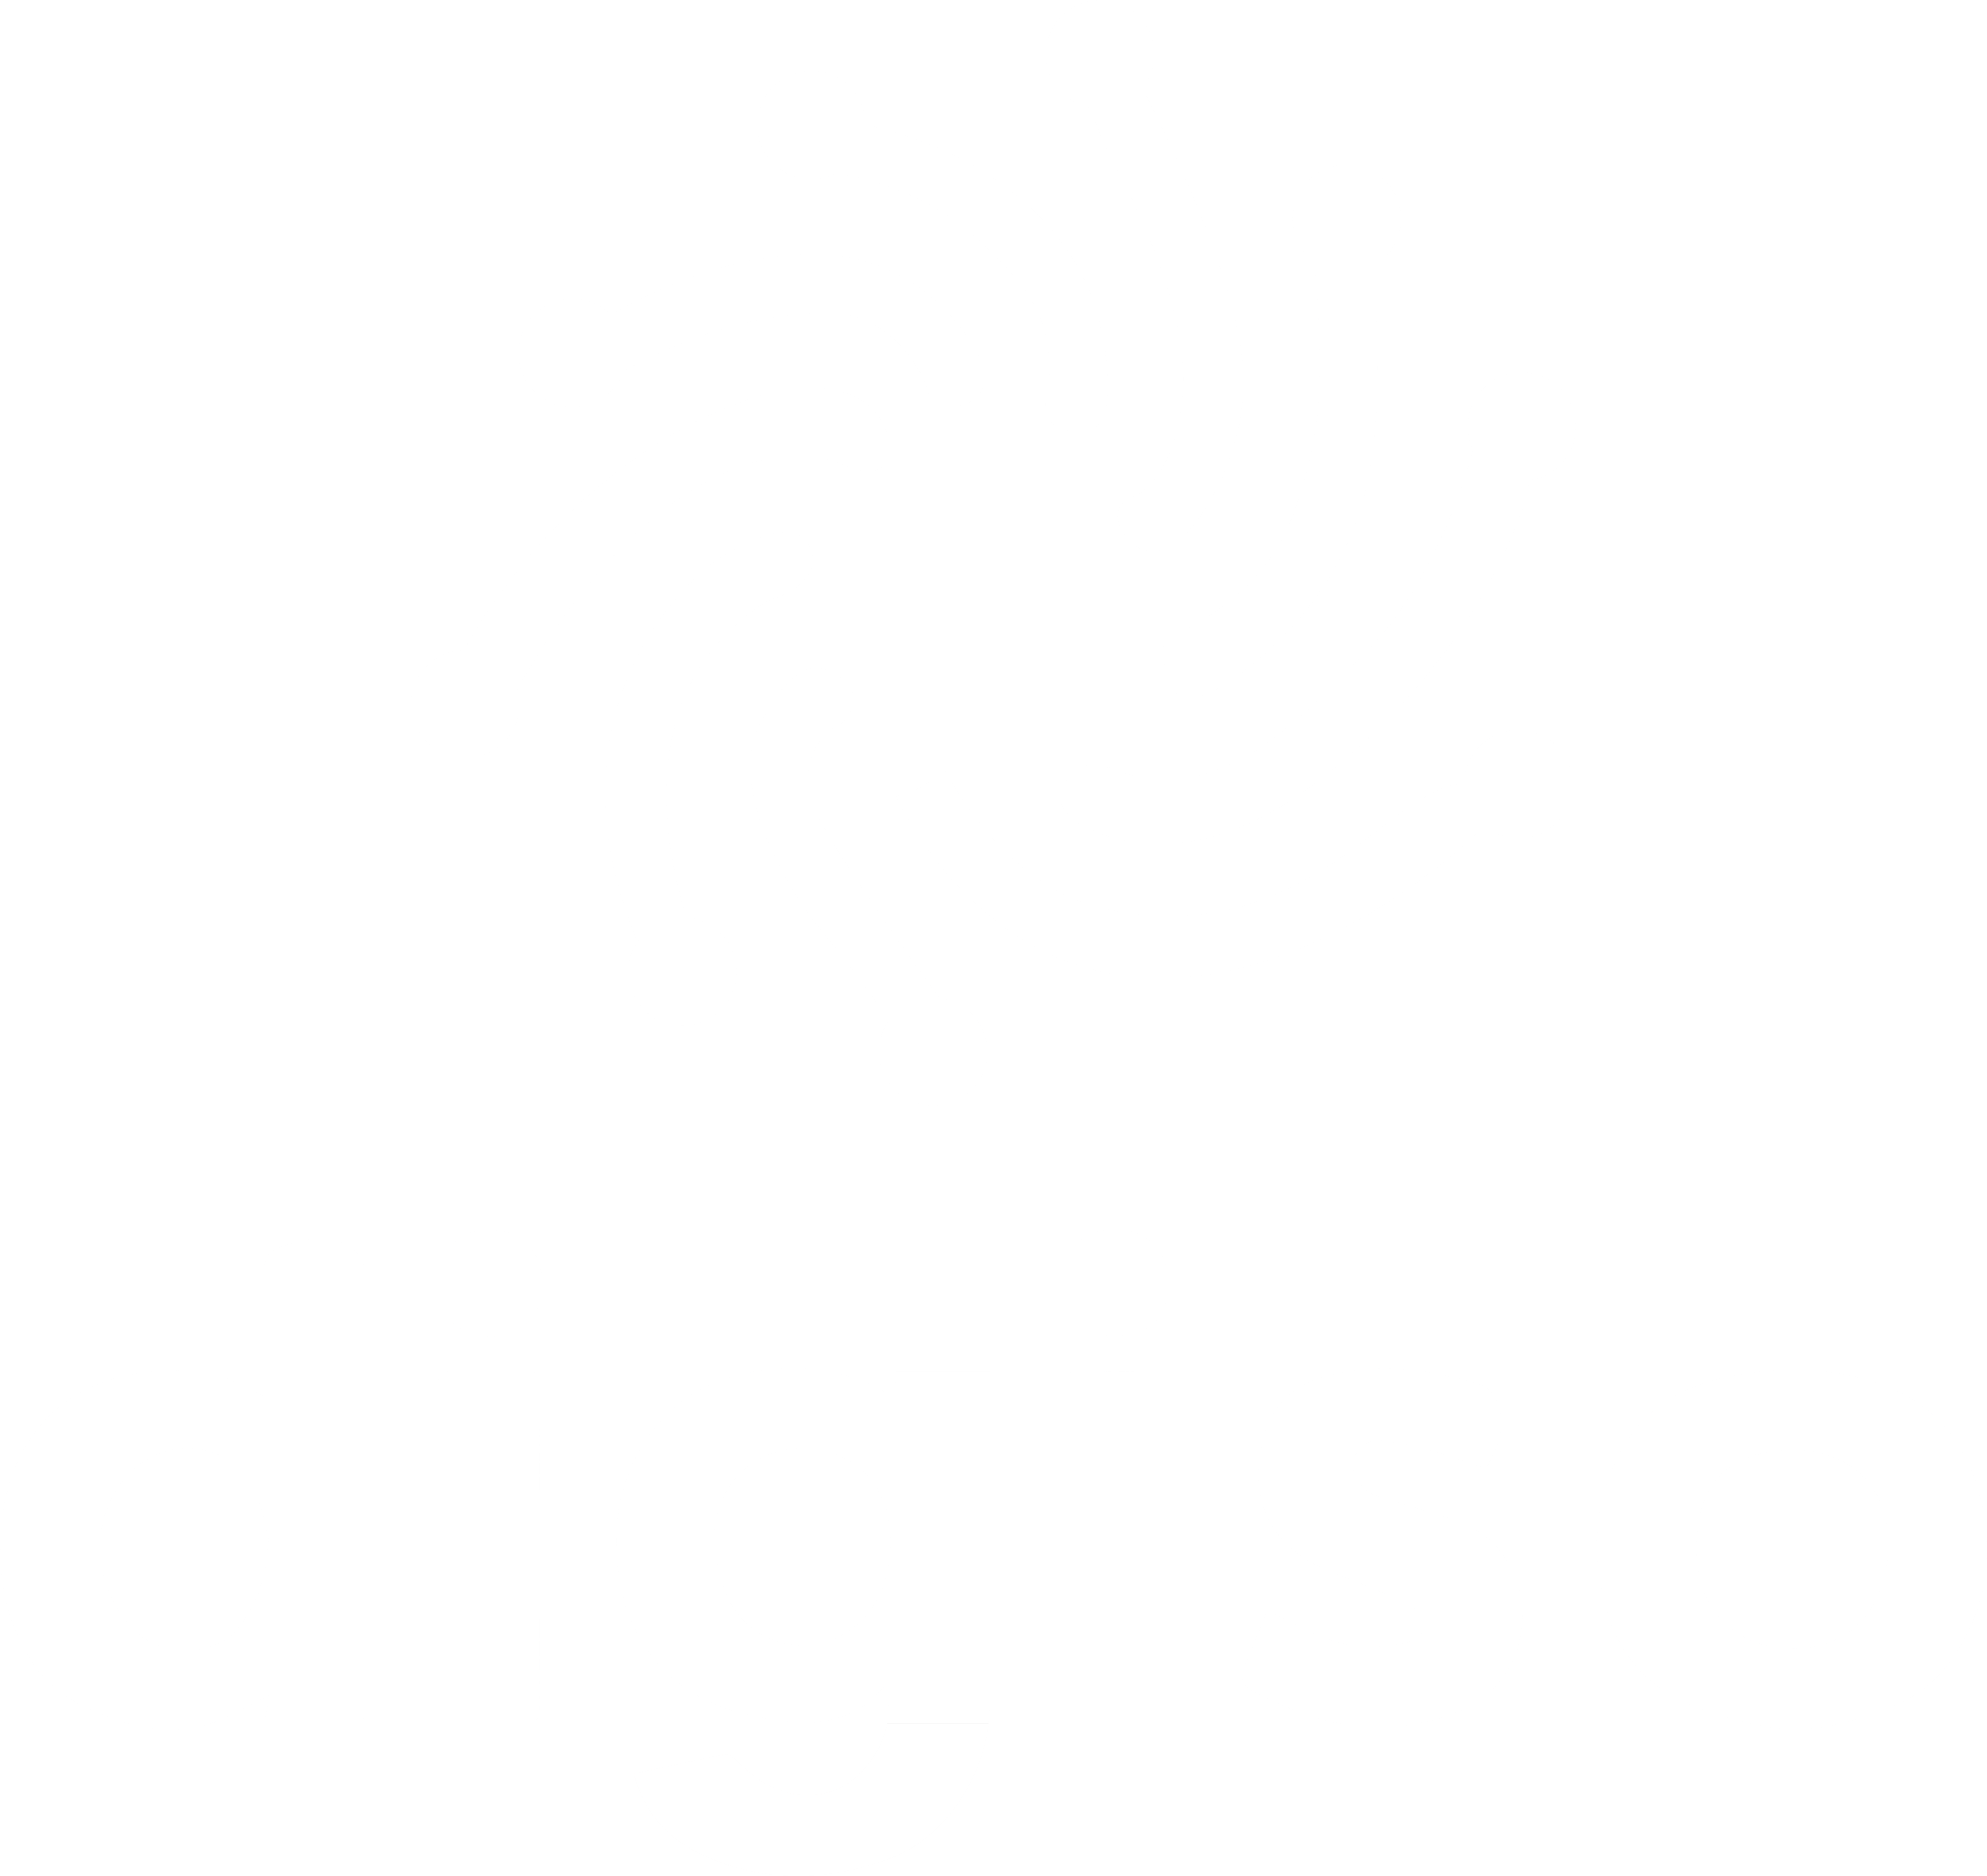 DIGISO – Đăng ký thương hiệu – bảo hộ tài sản trí tuệ